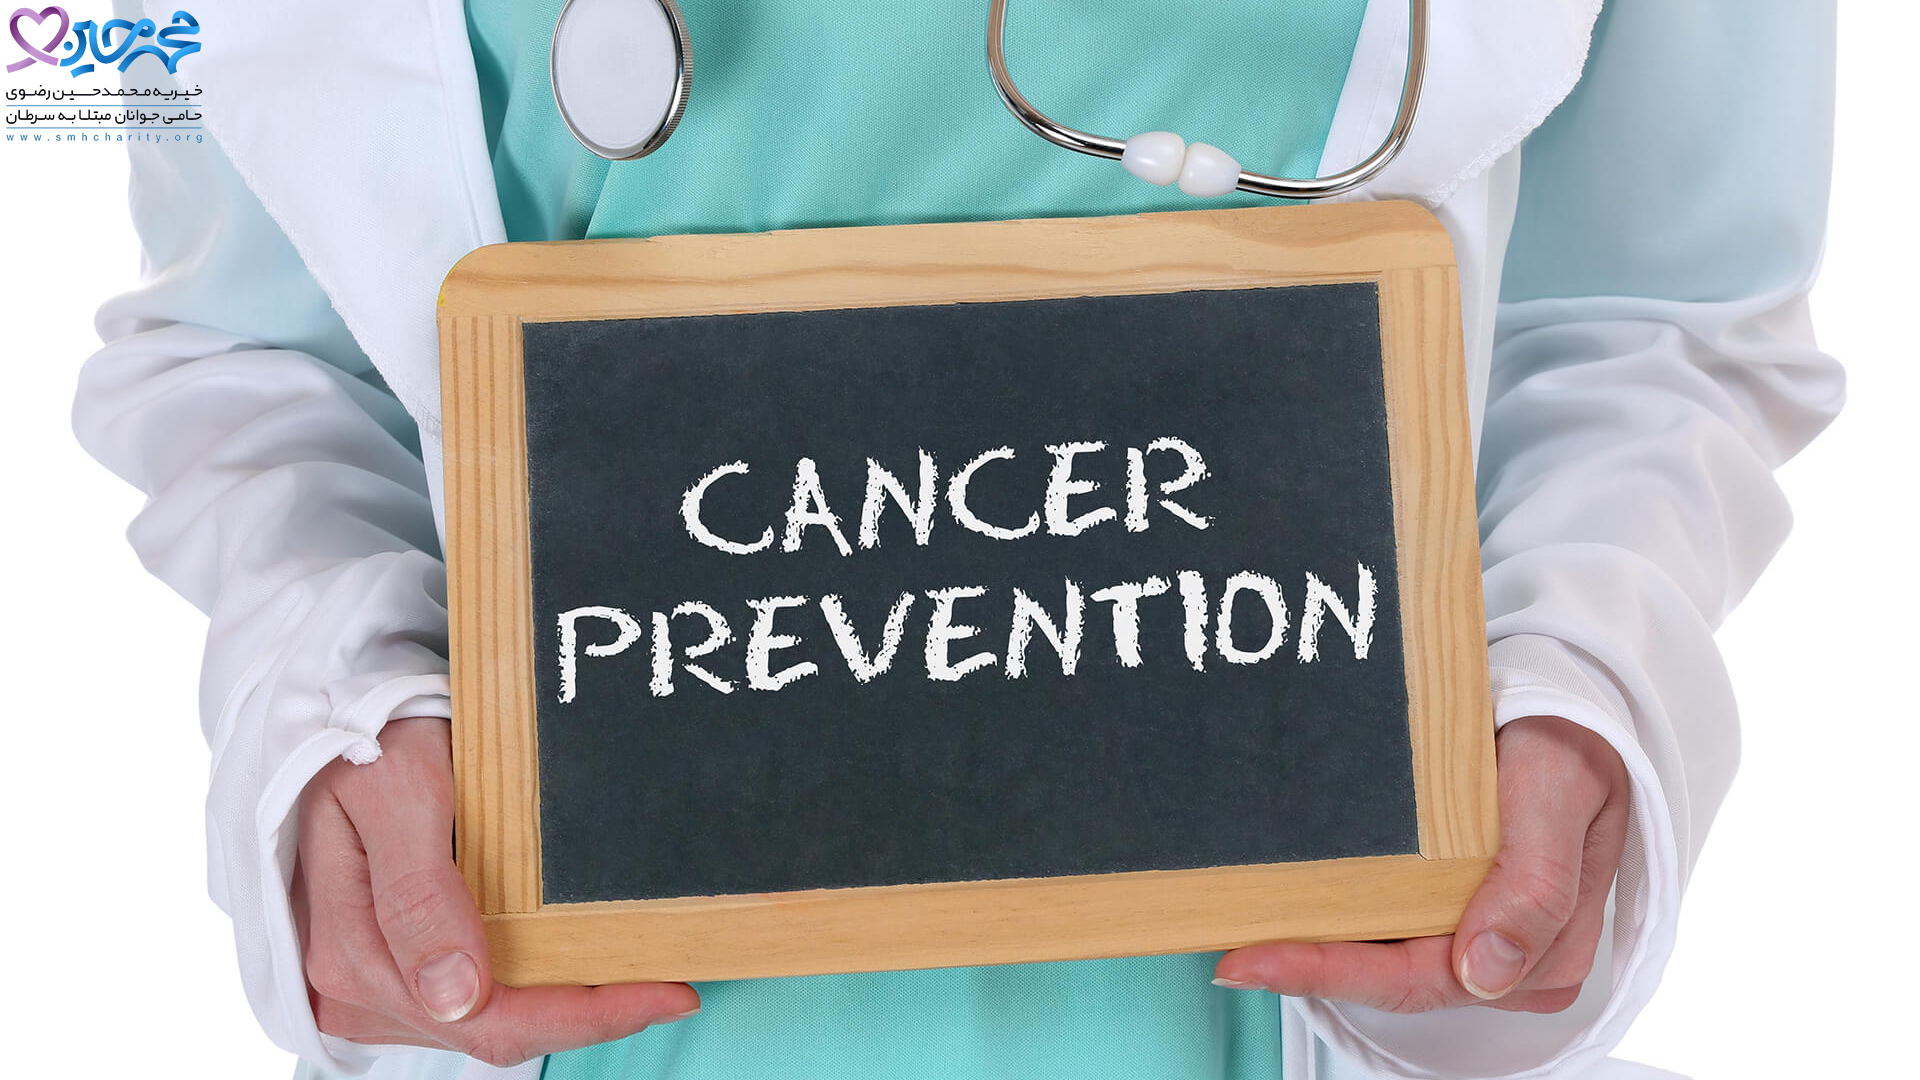 سرطان های شایع|بیماری سرطان|پیشگیری از سرطان|عوامل مستعد کننده ابتلا به سرطان|چگونه می توان از سرطان پیشگیری کرد|